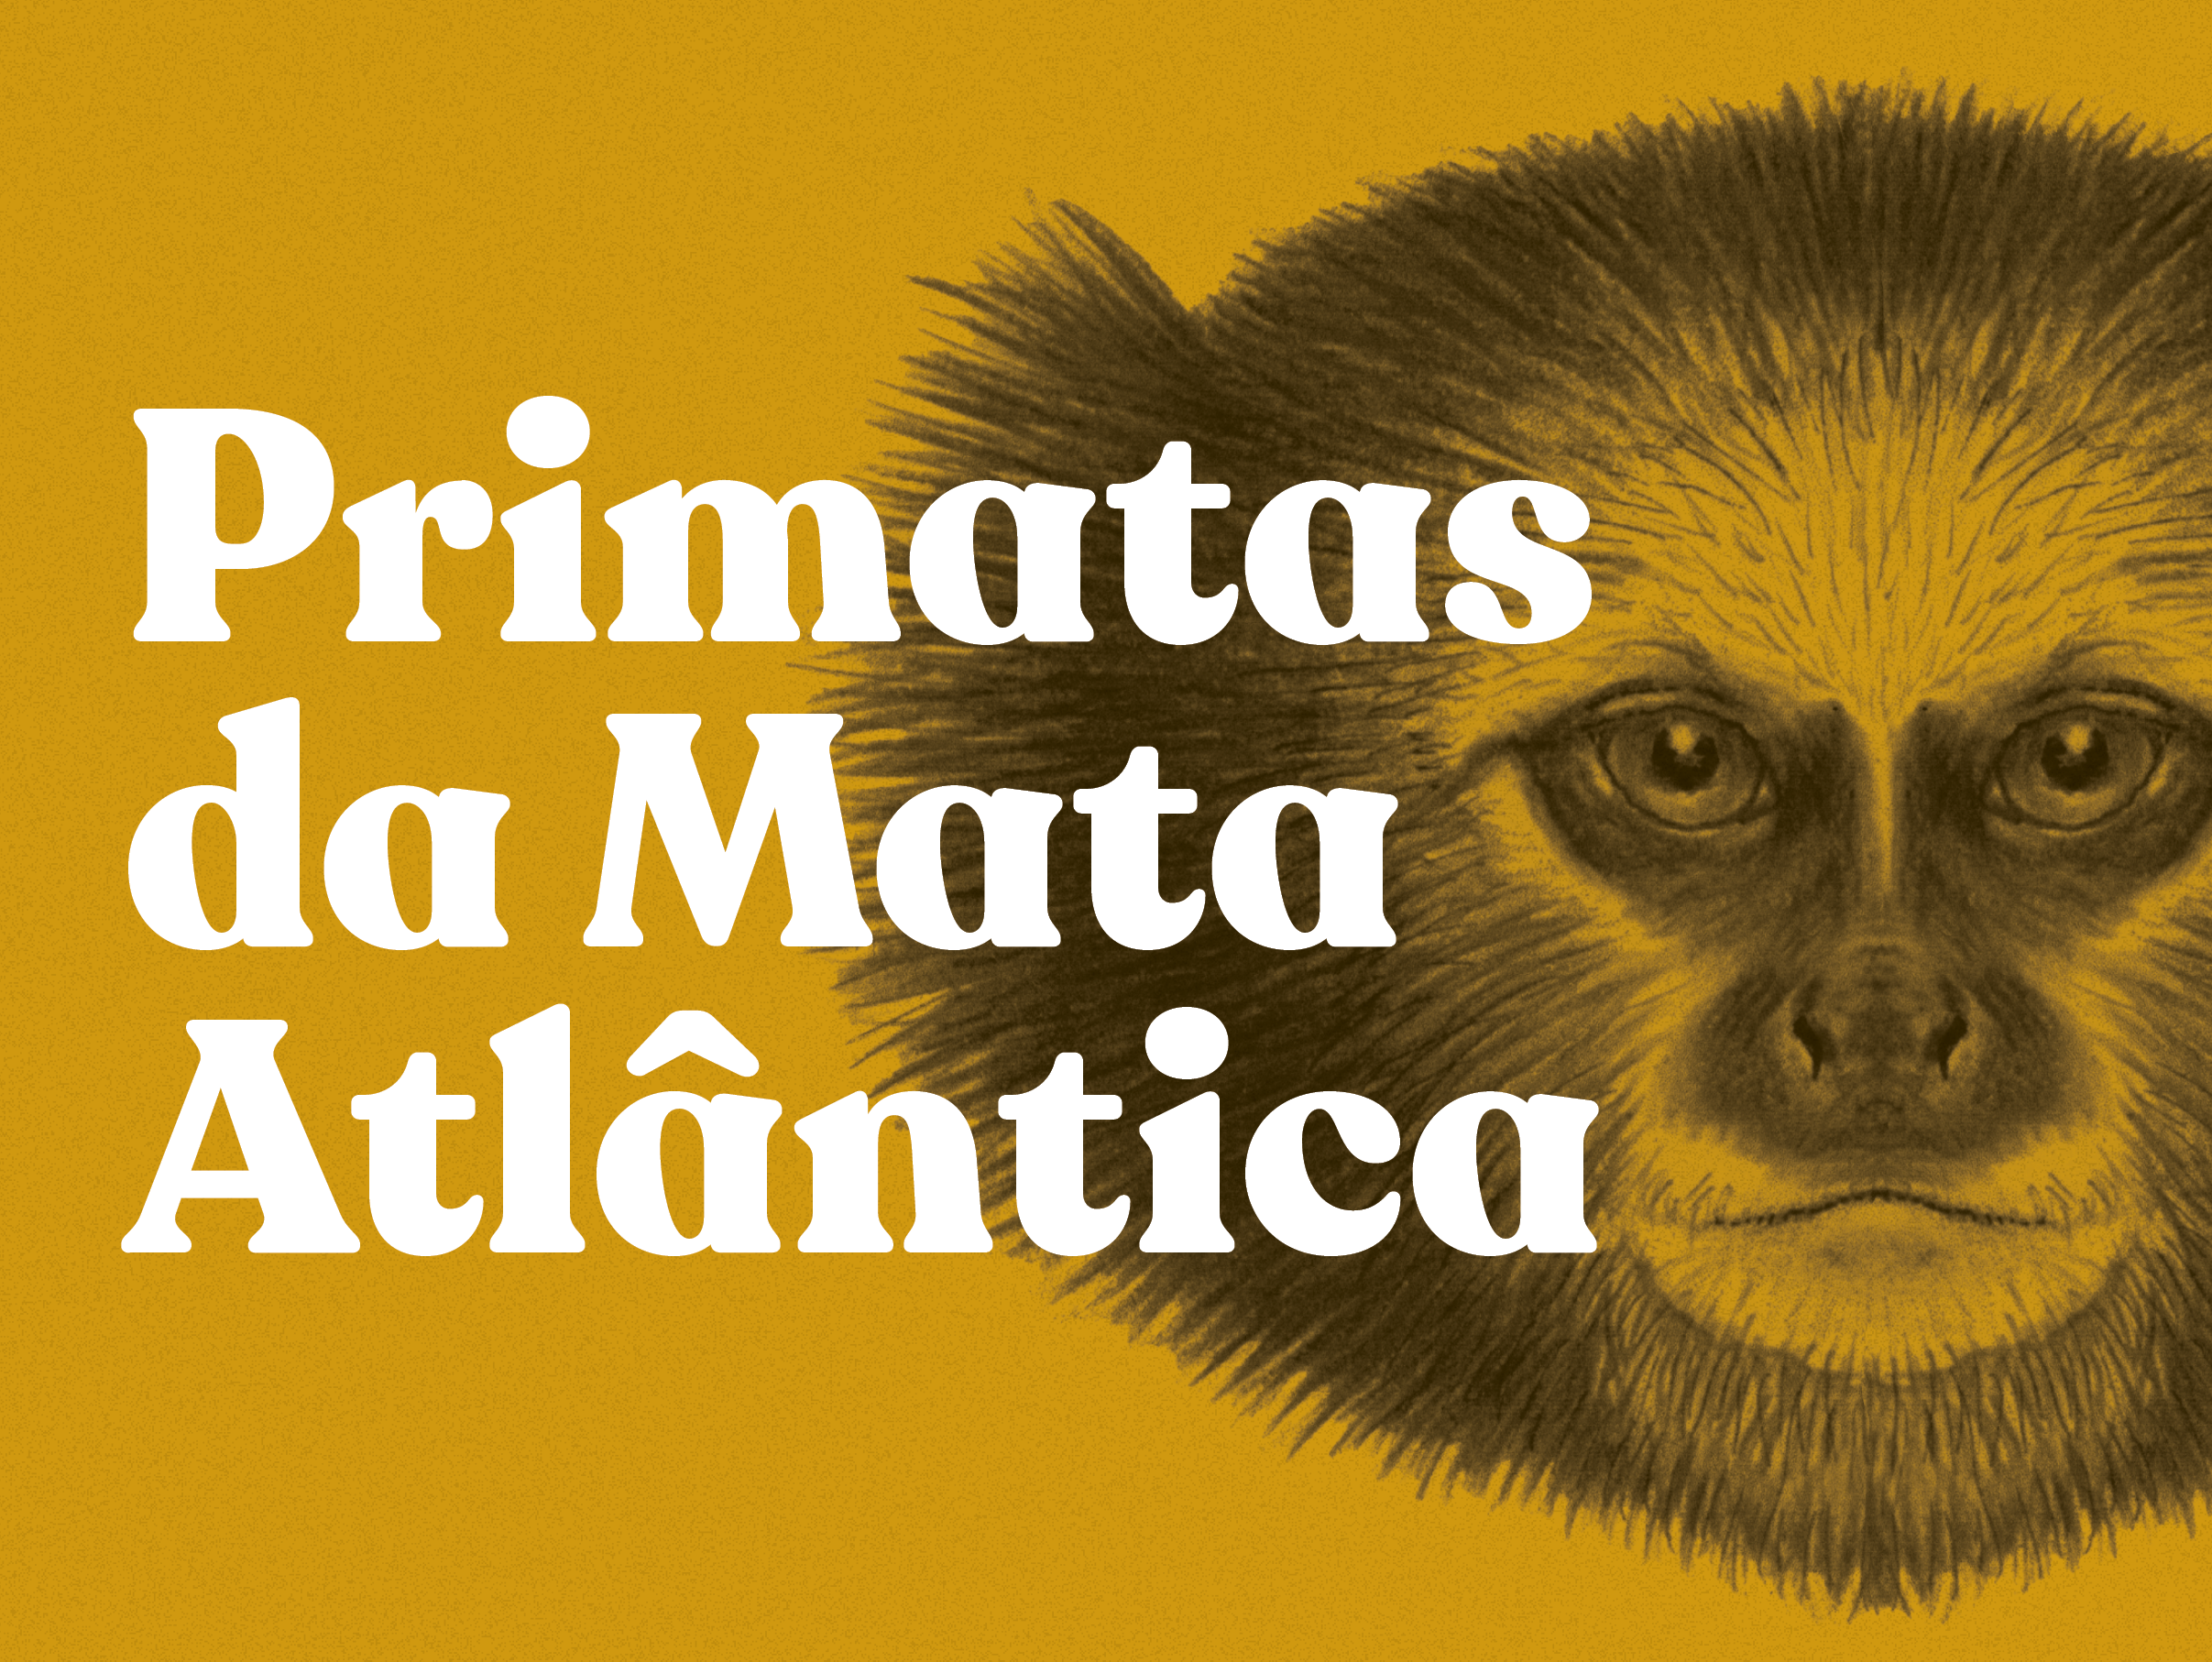 Exposição “Primatas da Mata Atlântica” é montada no Museu Mello Leitão, em Santa Teresa/ES